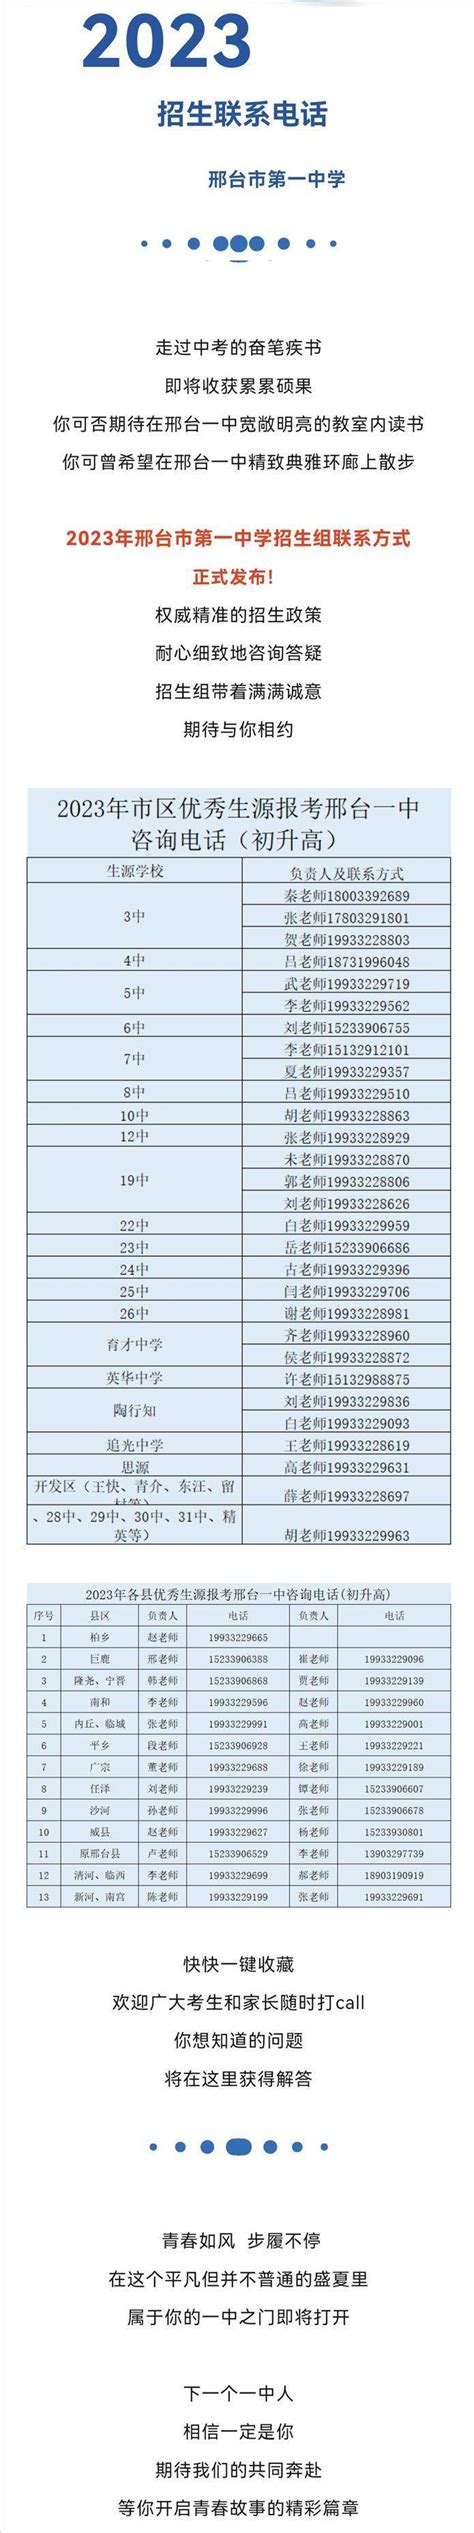 邢台123：邢台市第一中学2023年招生联系电话权威发布